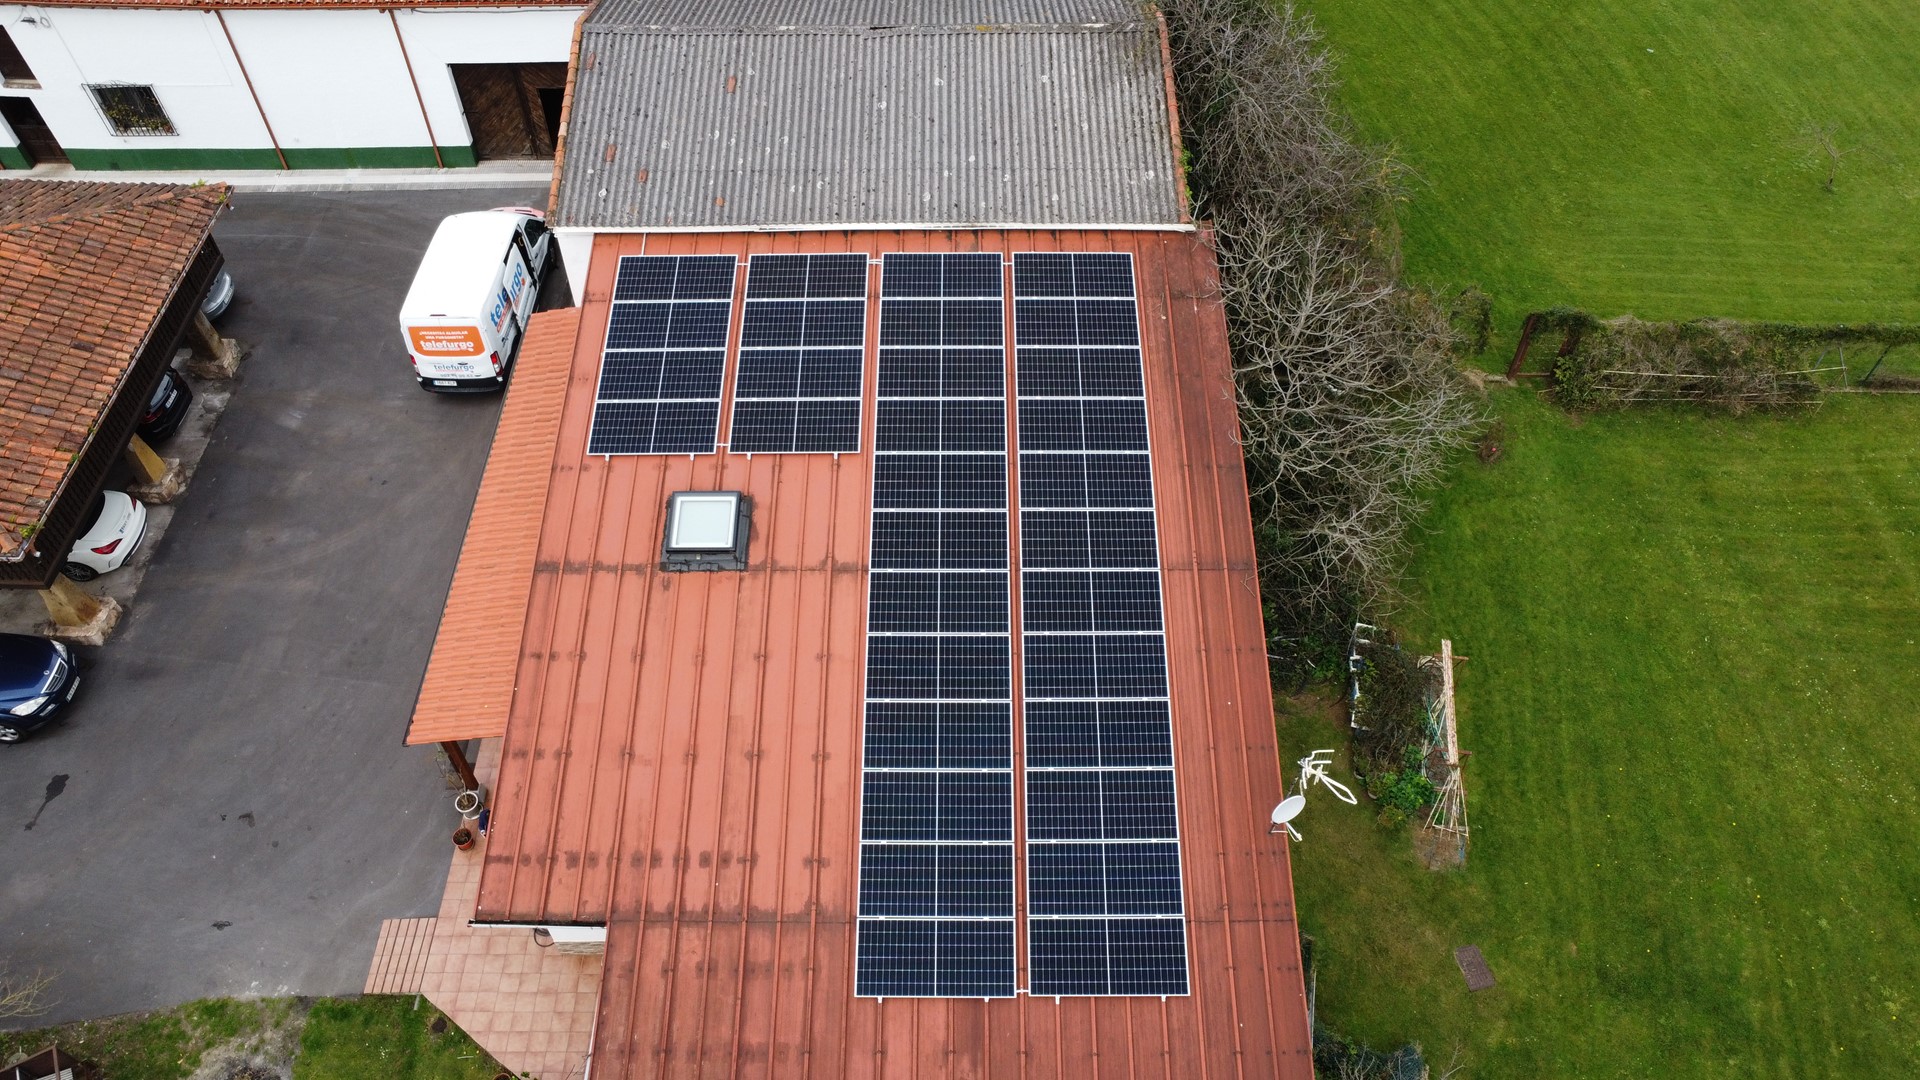 Autoconsumo fotovoltaico de 17.6 kWp en Llagar en Gijón